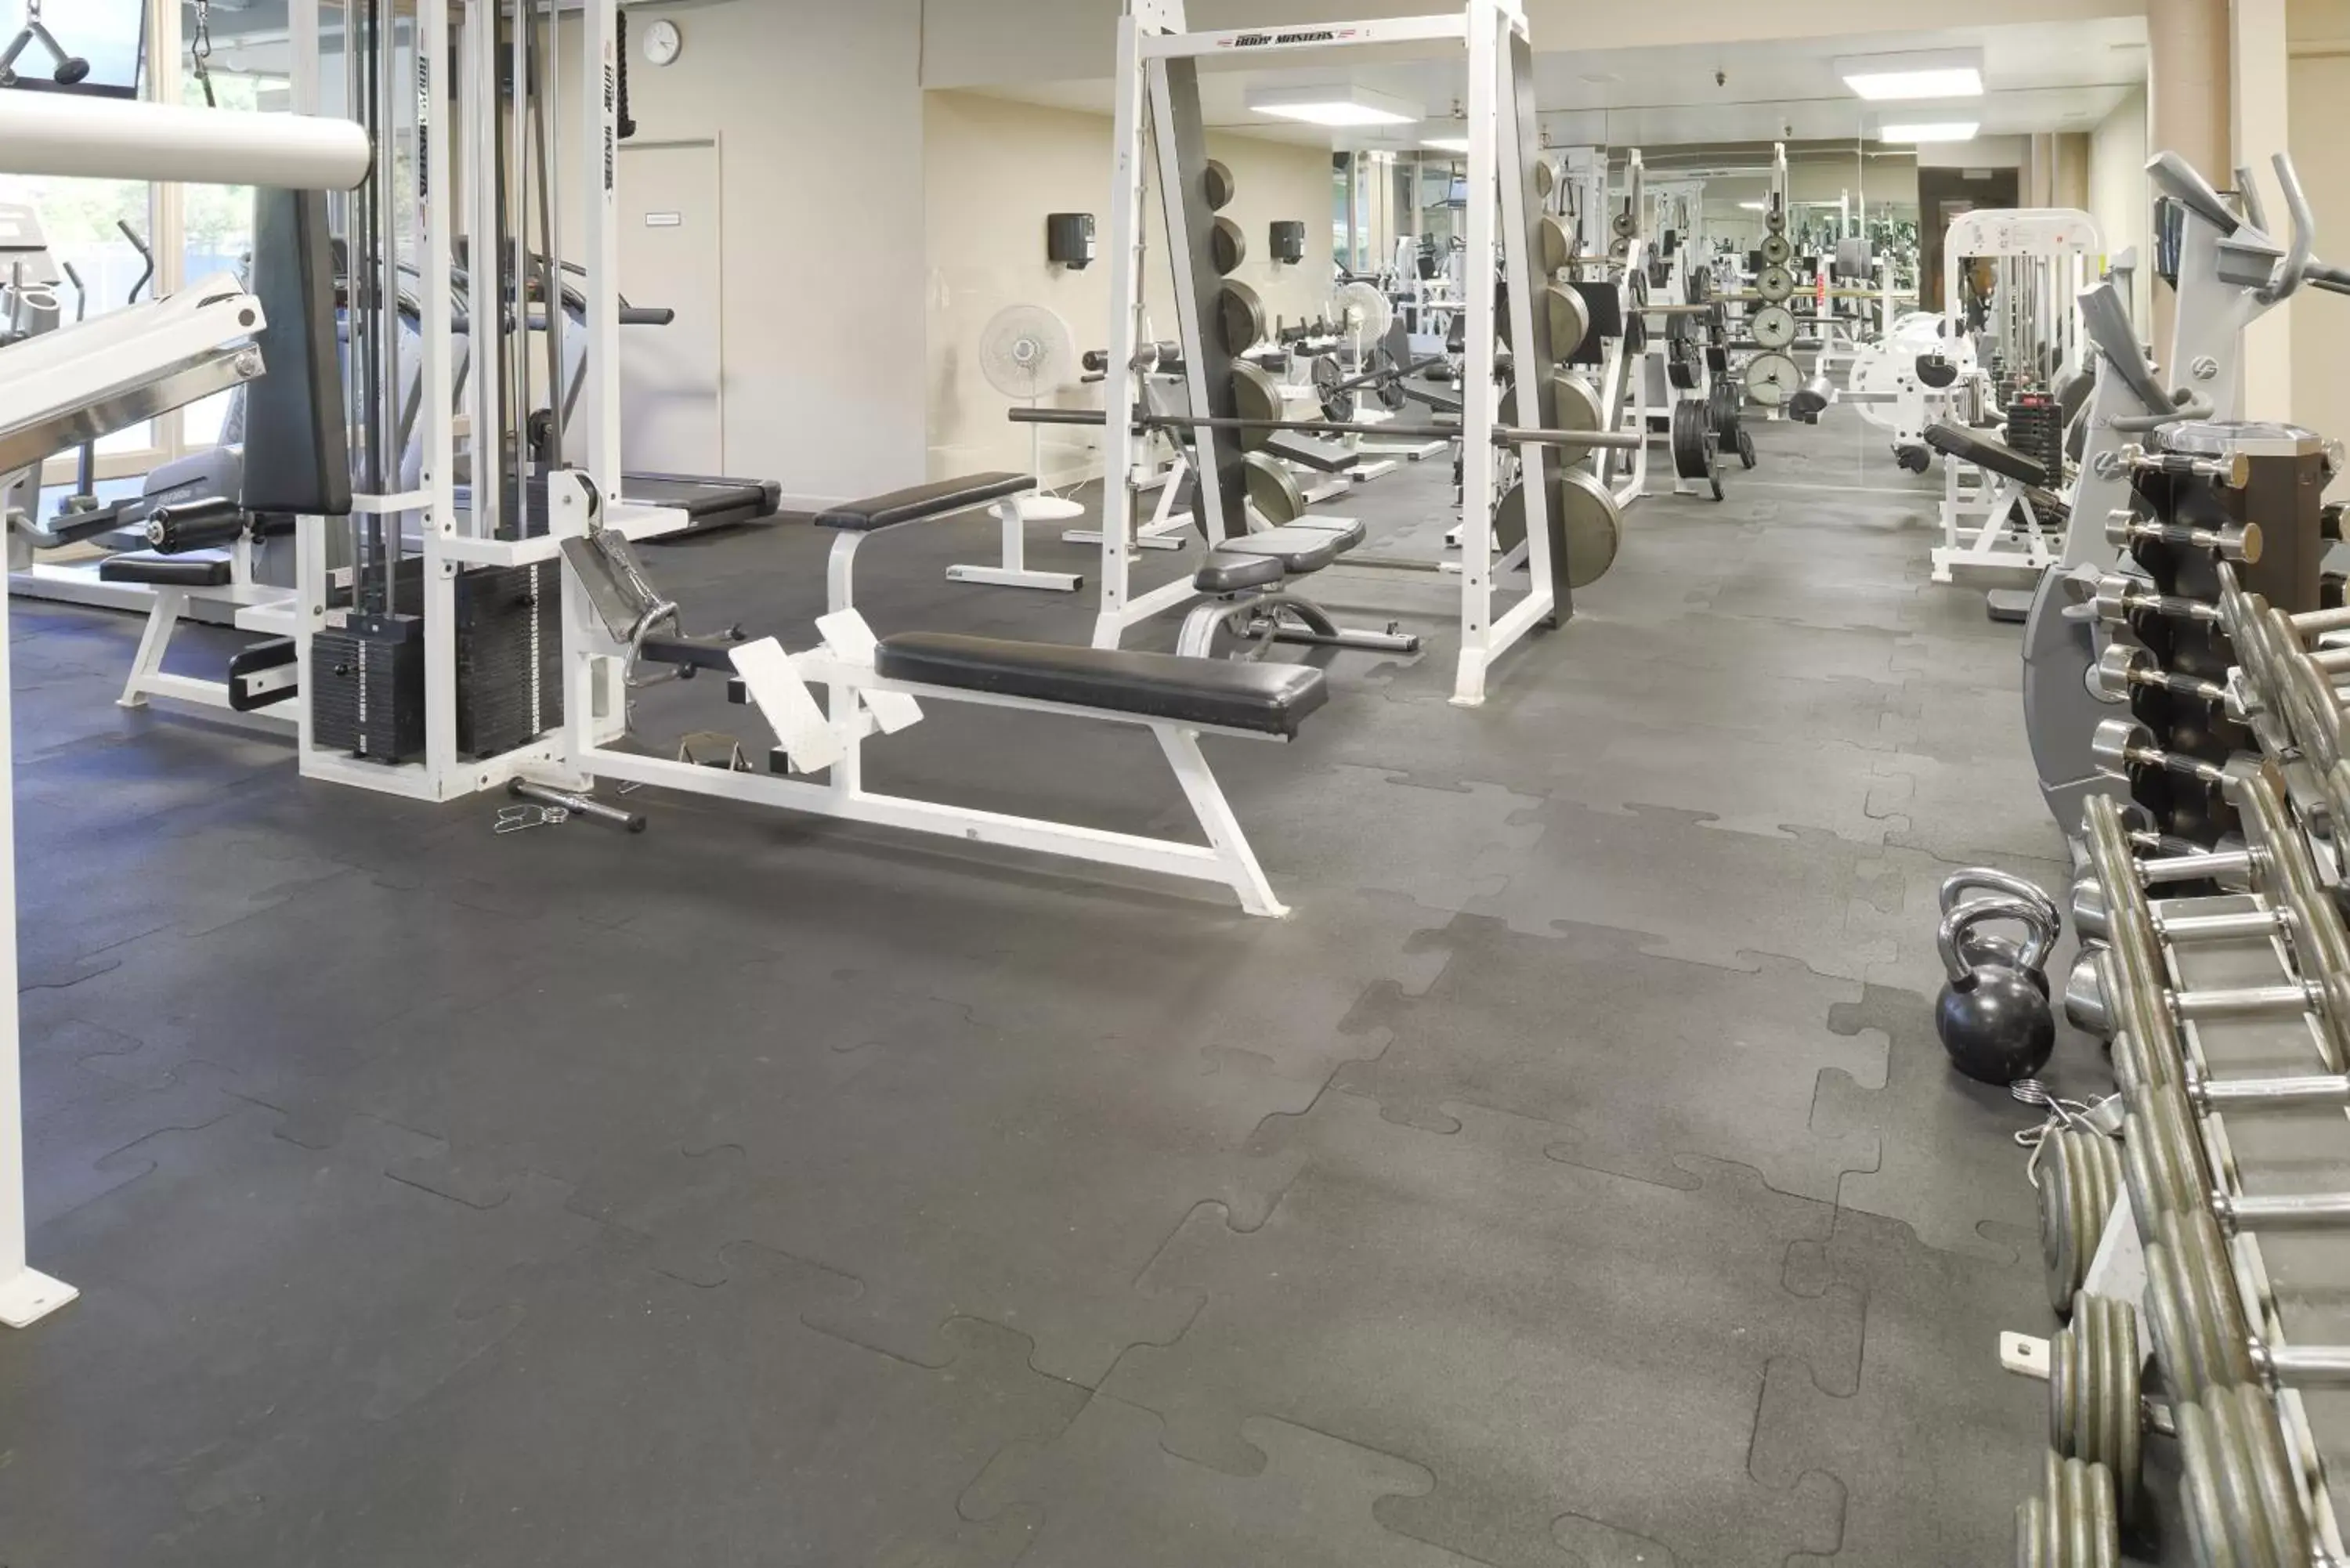 Fitness centre/facilities, Fitness Center/Facilities in Riviera Oaks Resort